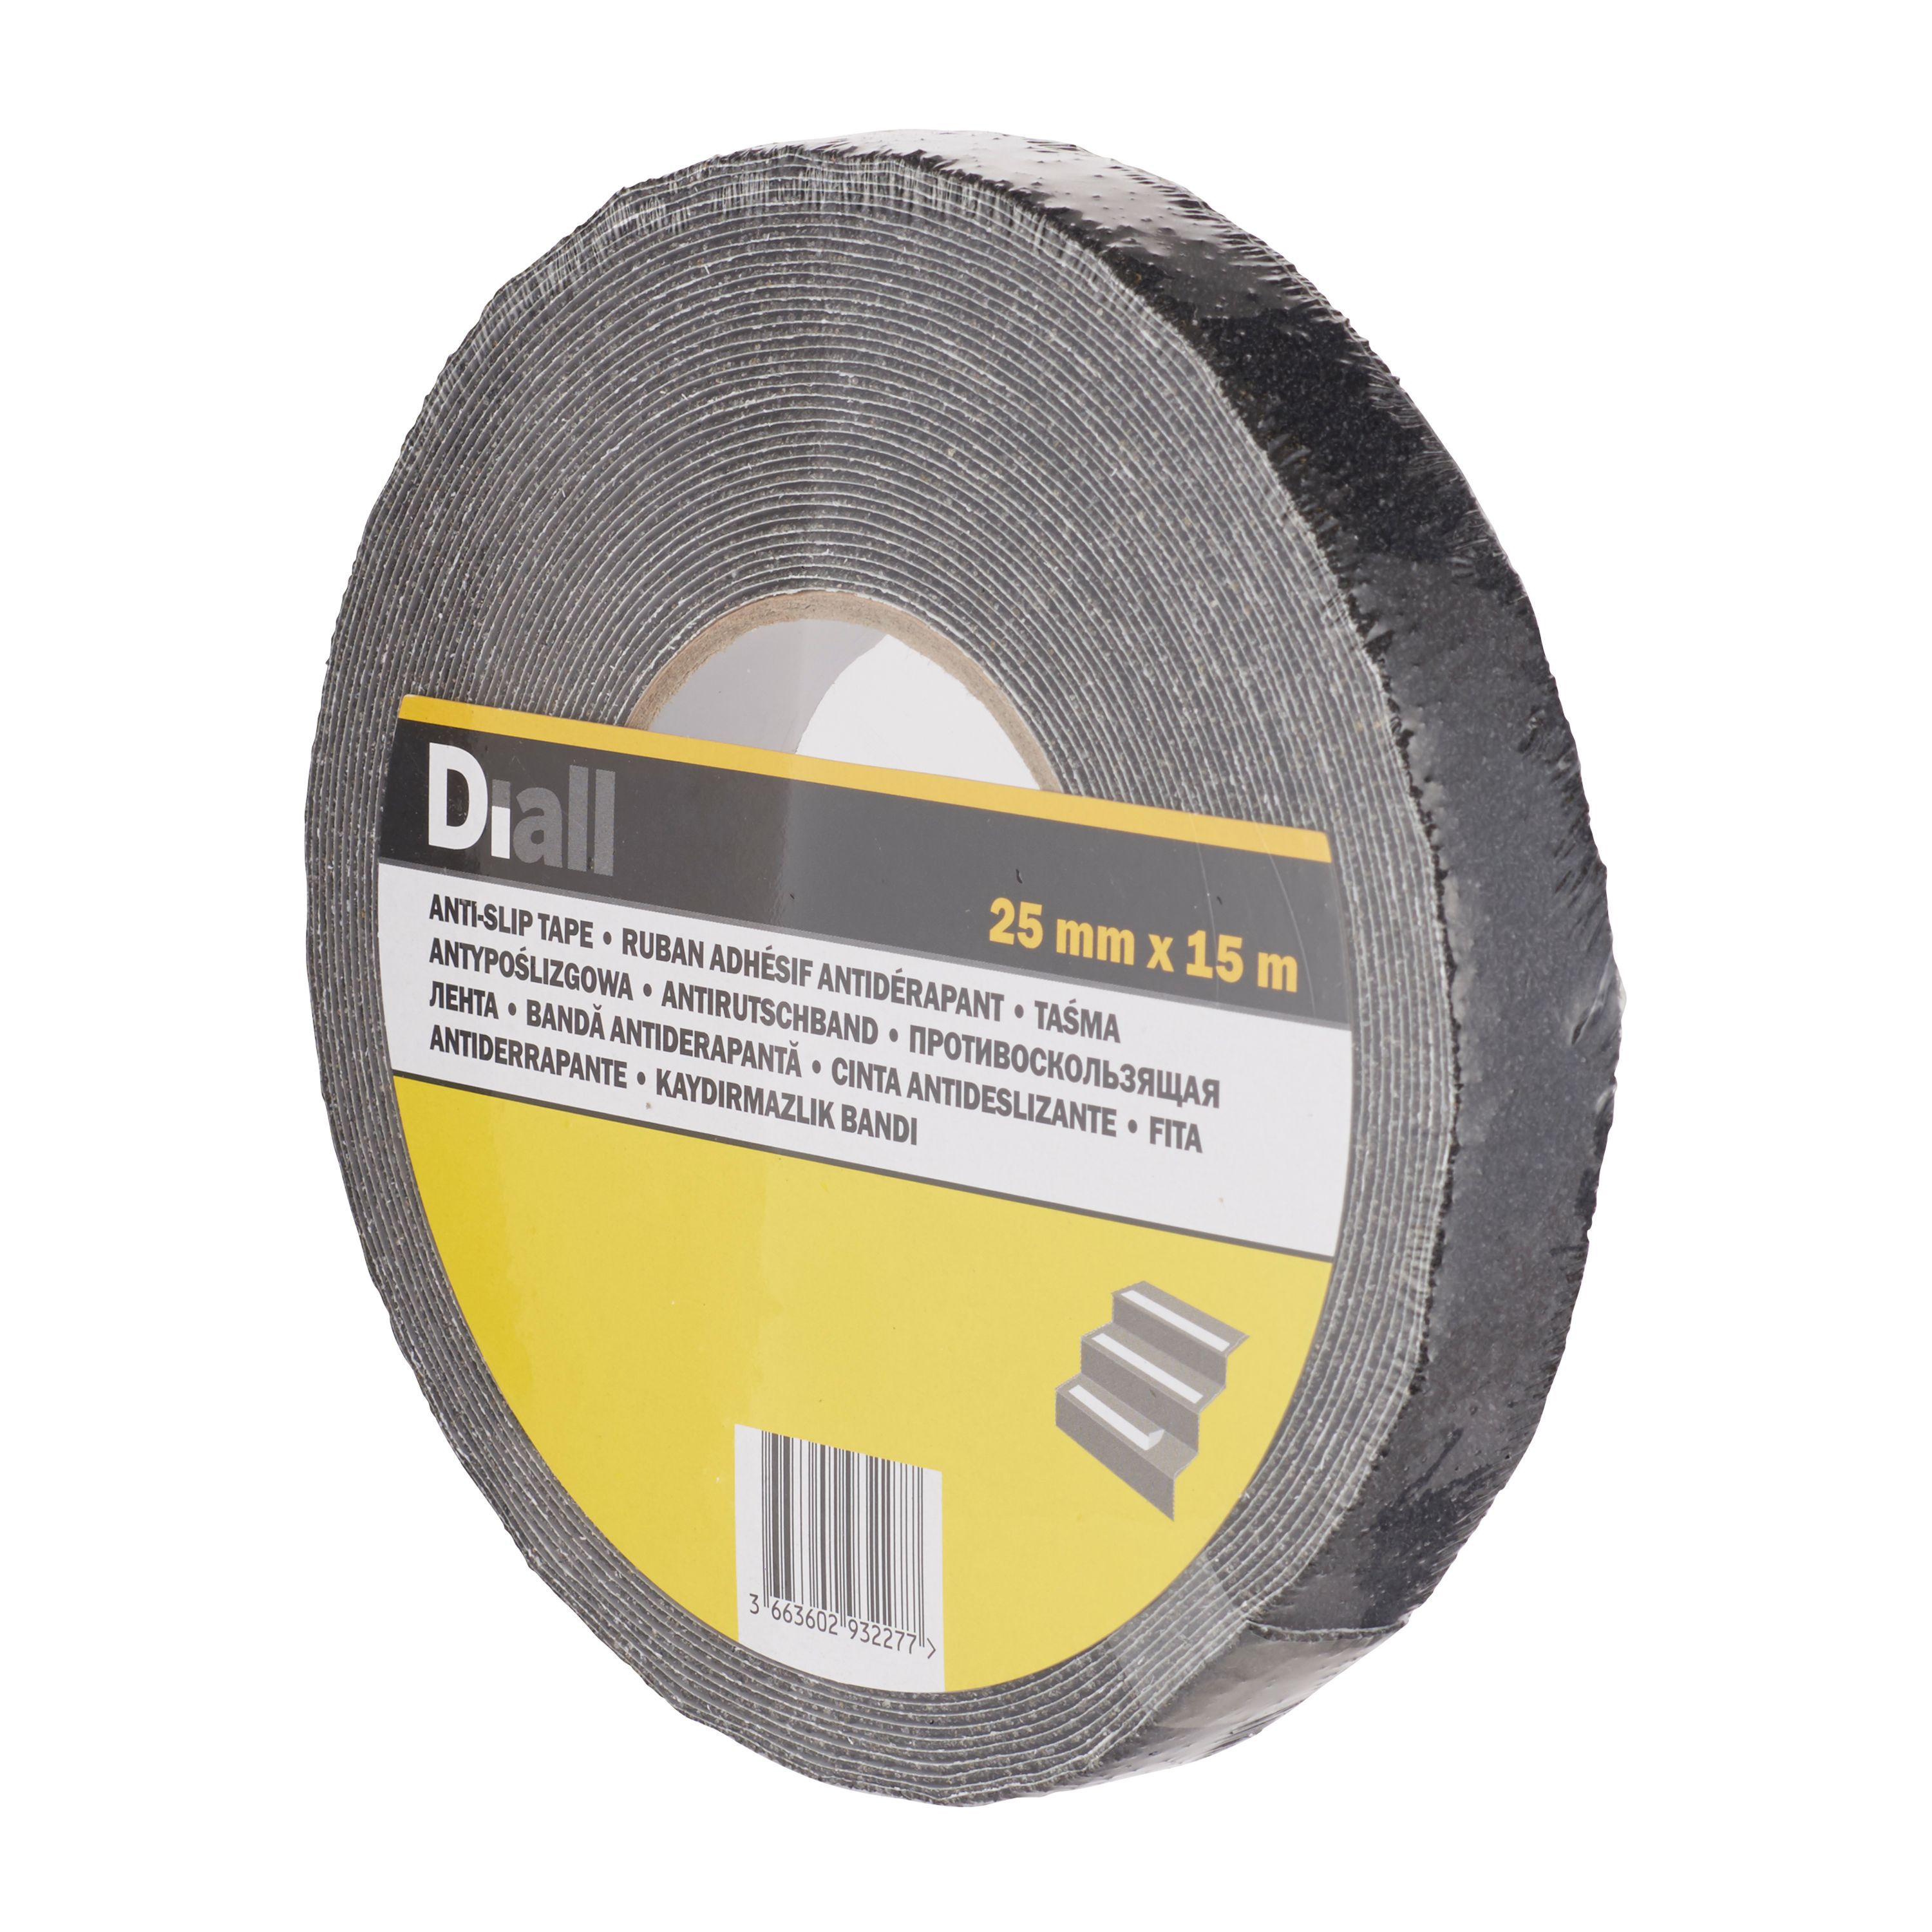 Diall Black Anti-slip Tape (L)15m (W)25mm